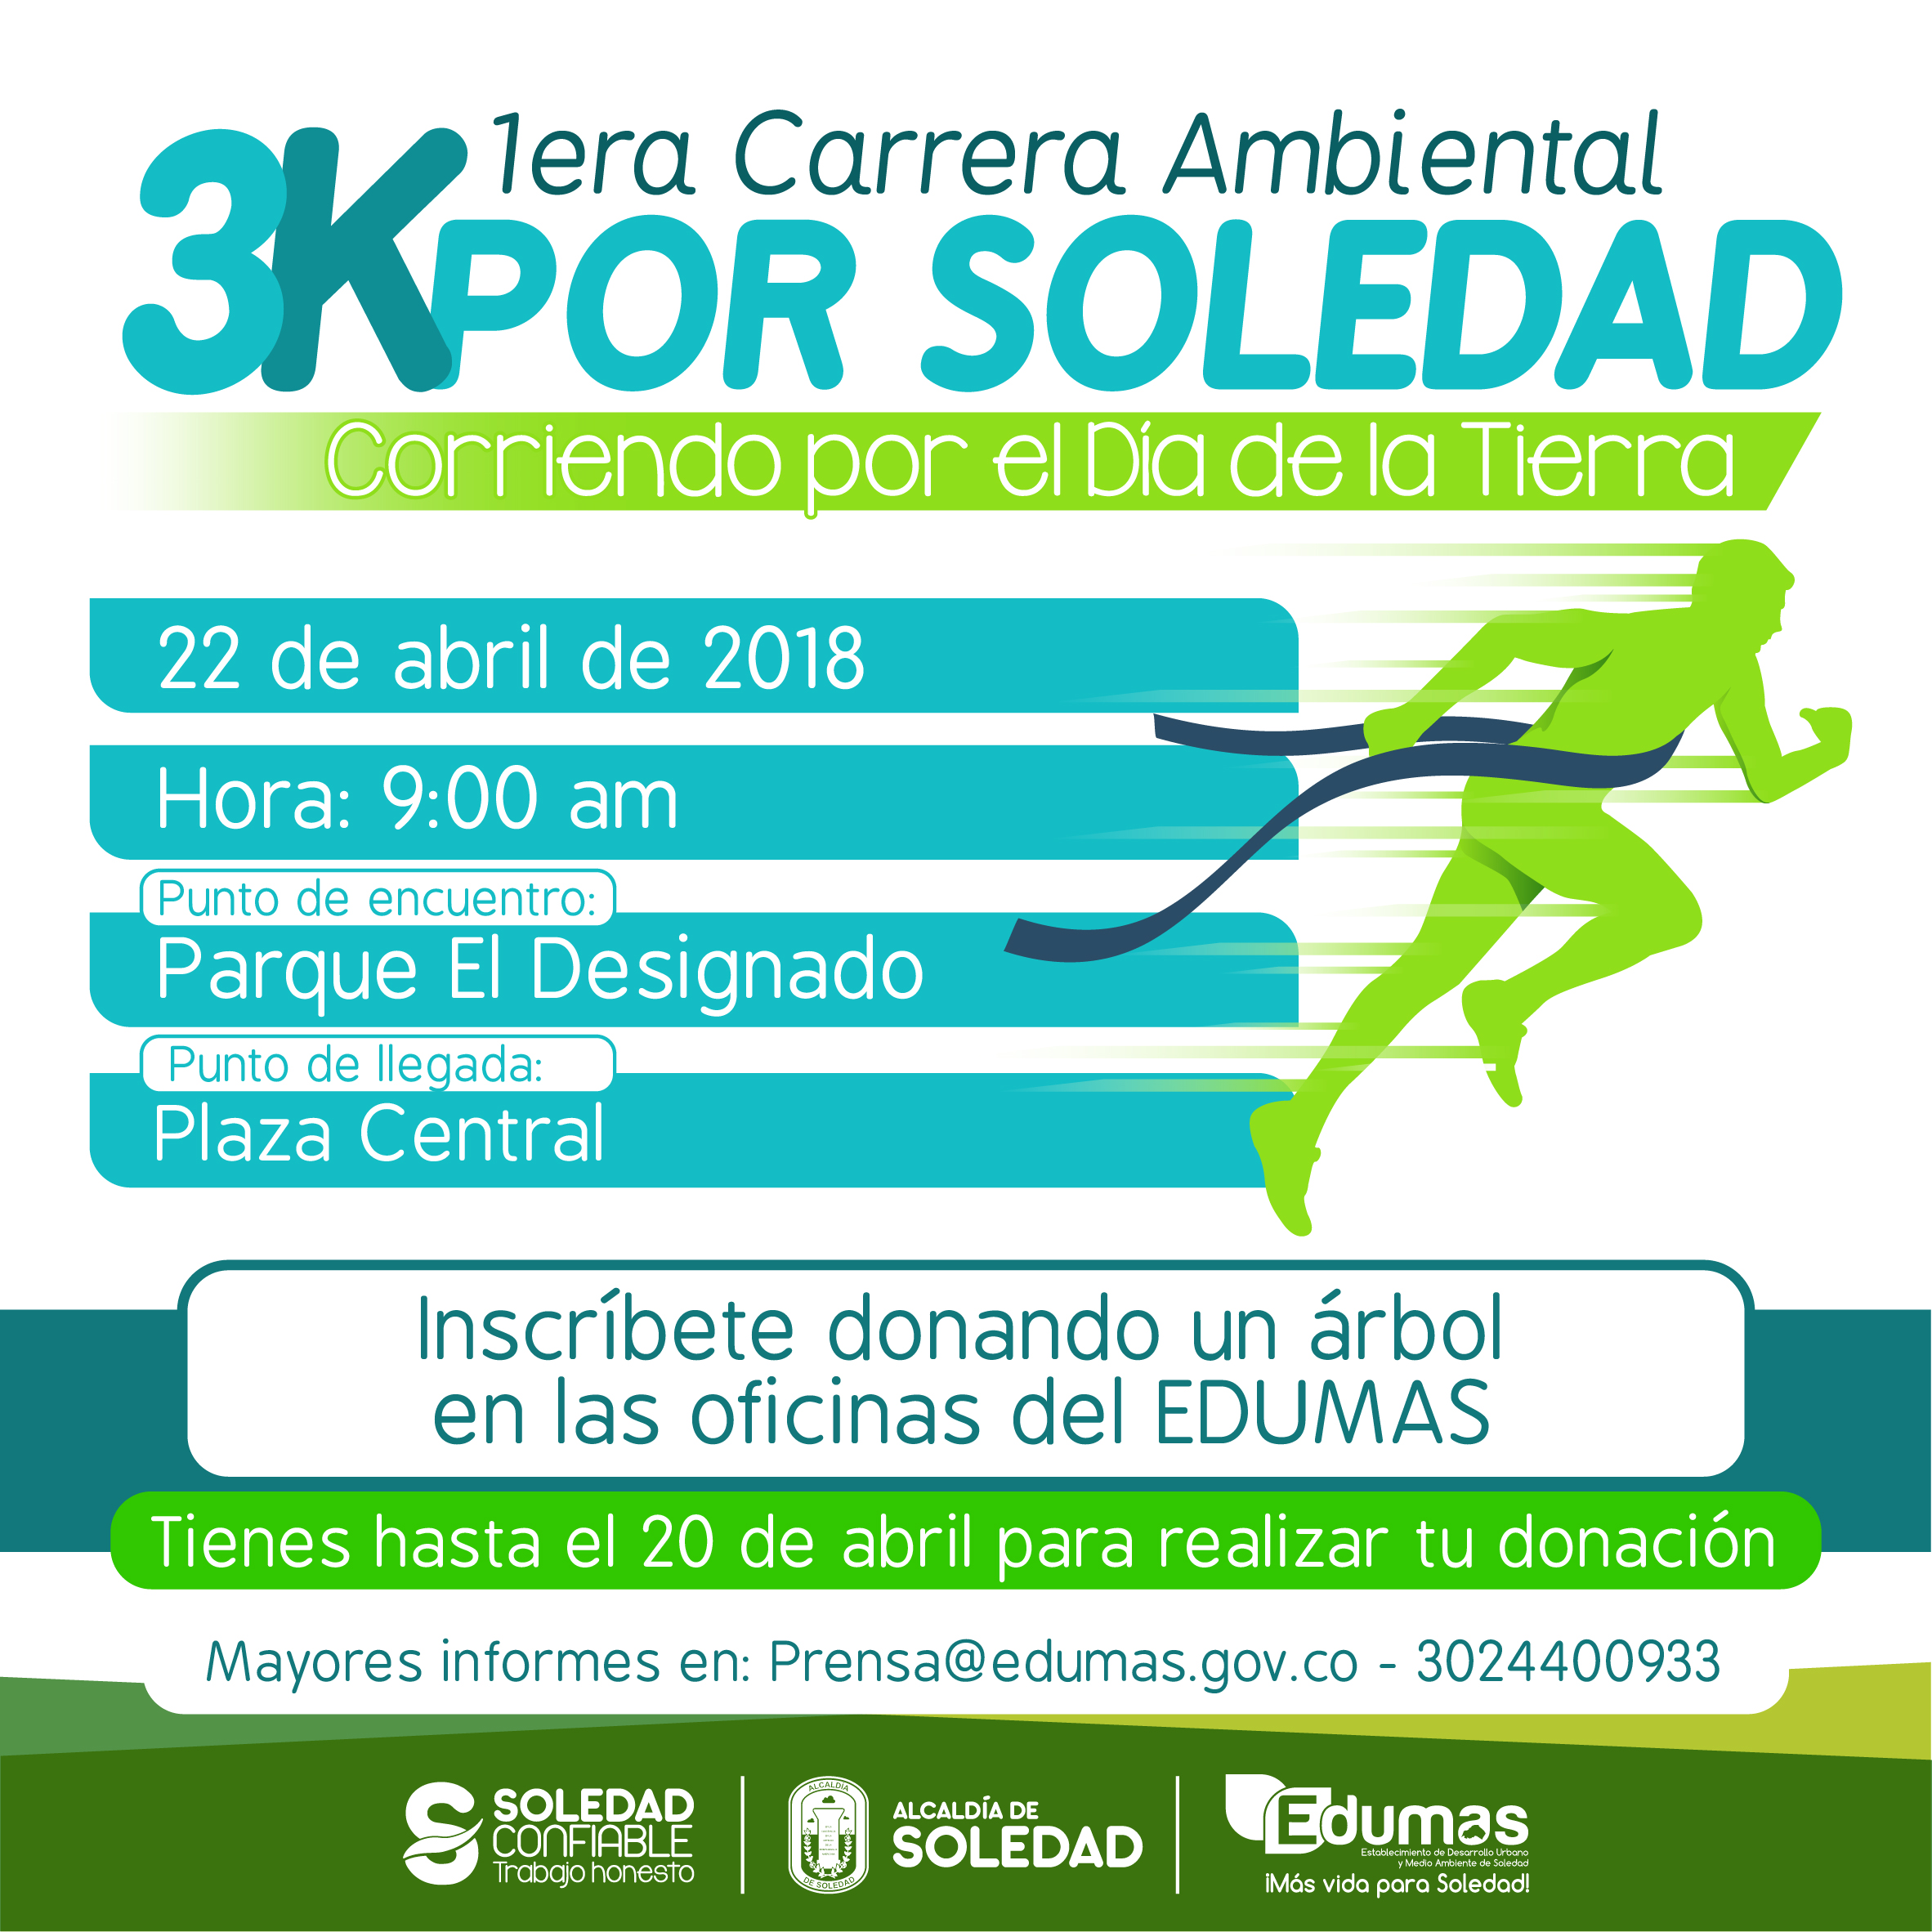 Con Carrera Ambiental 3k, Edumas celebrará  el Día de la Tierra en Soledad